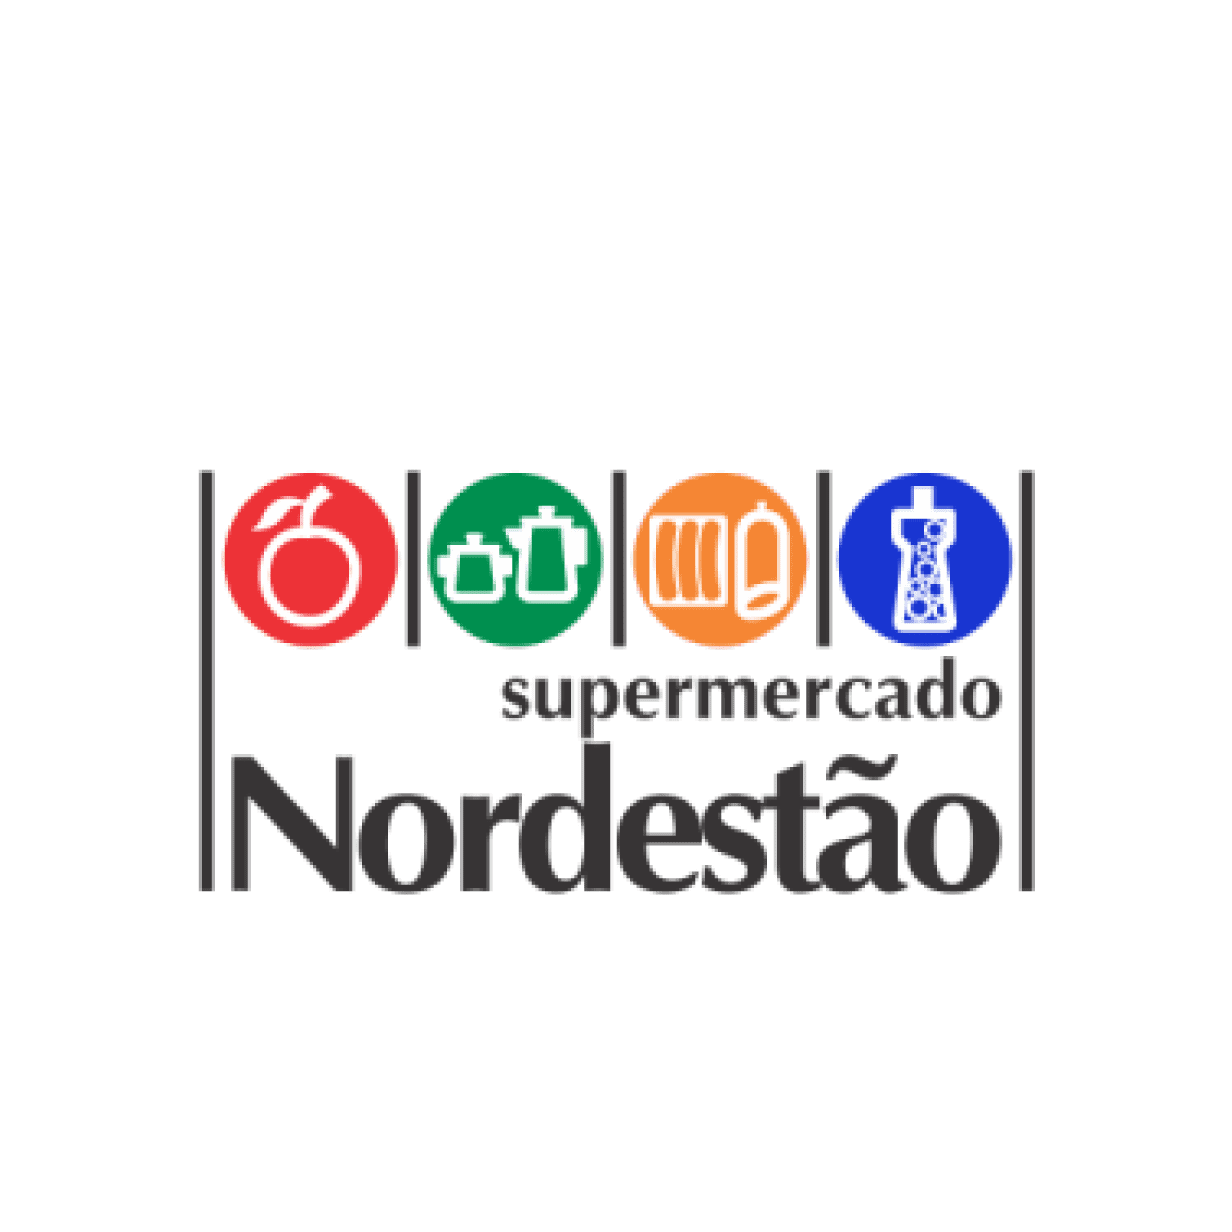 Logotipo supermercado nordestão